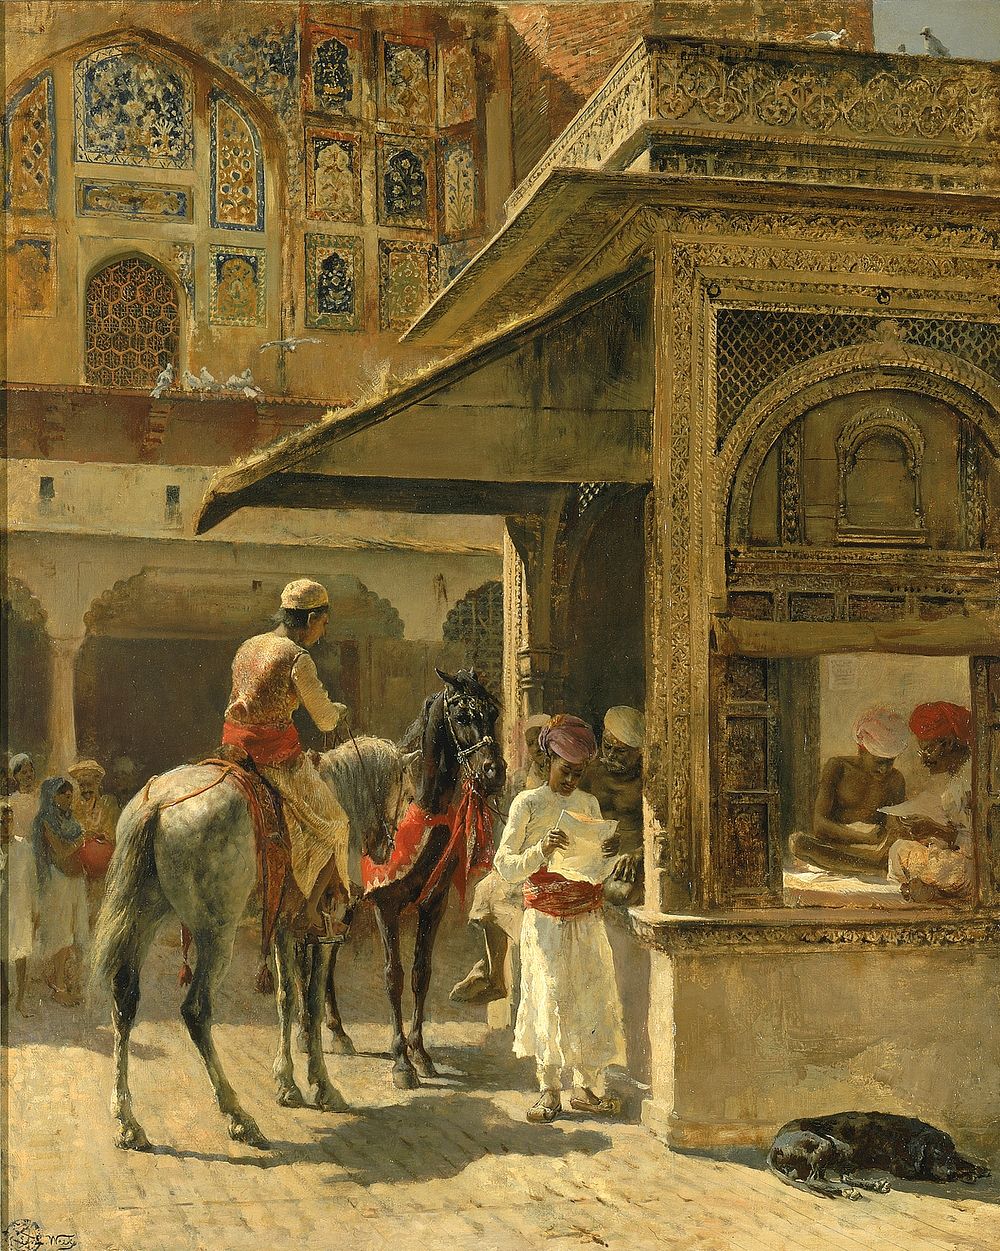 Hindu Merchants, Edwin Lord Weeks